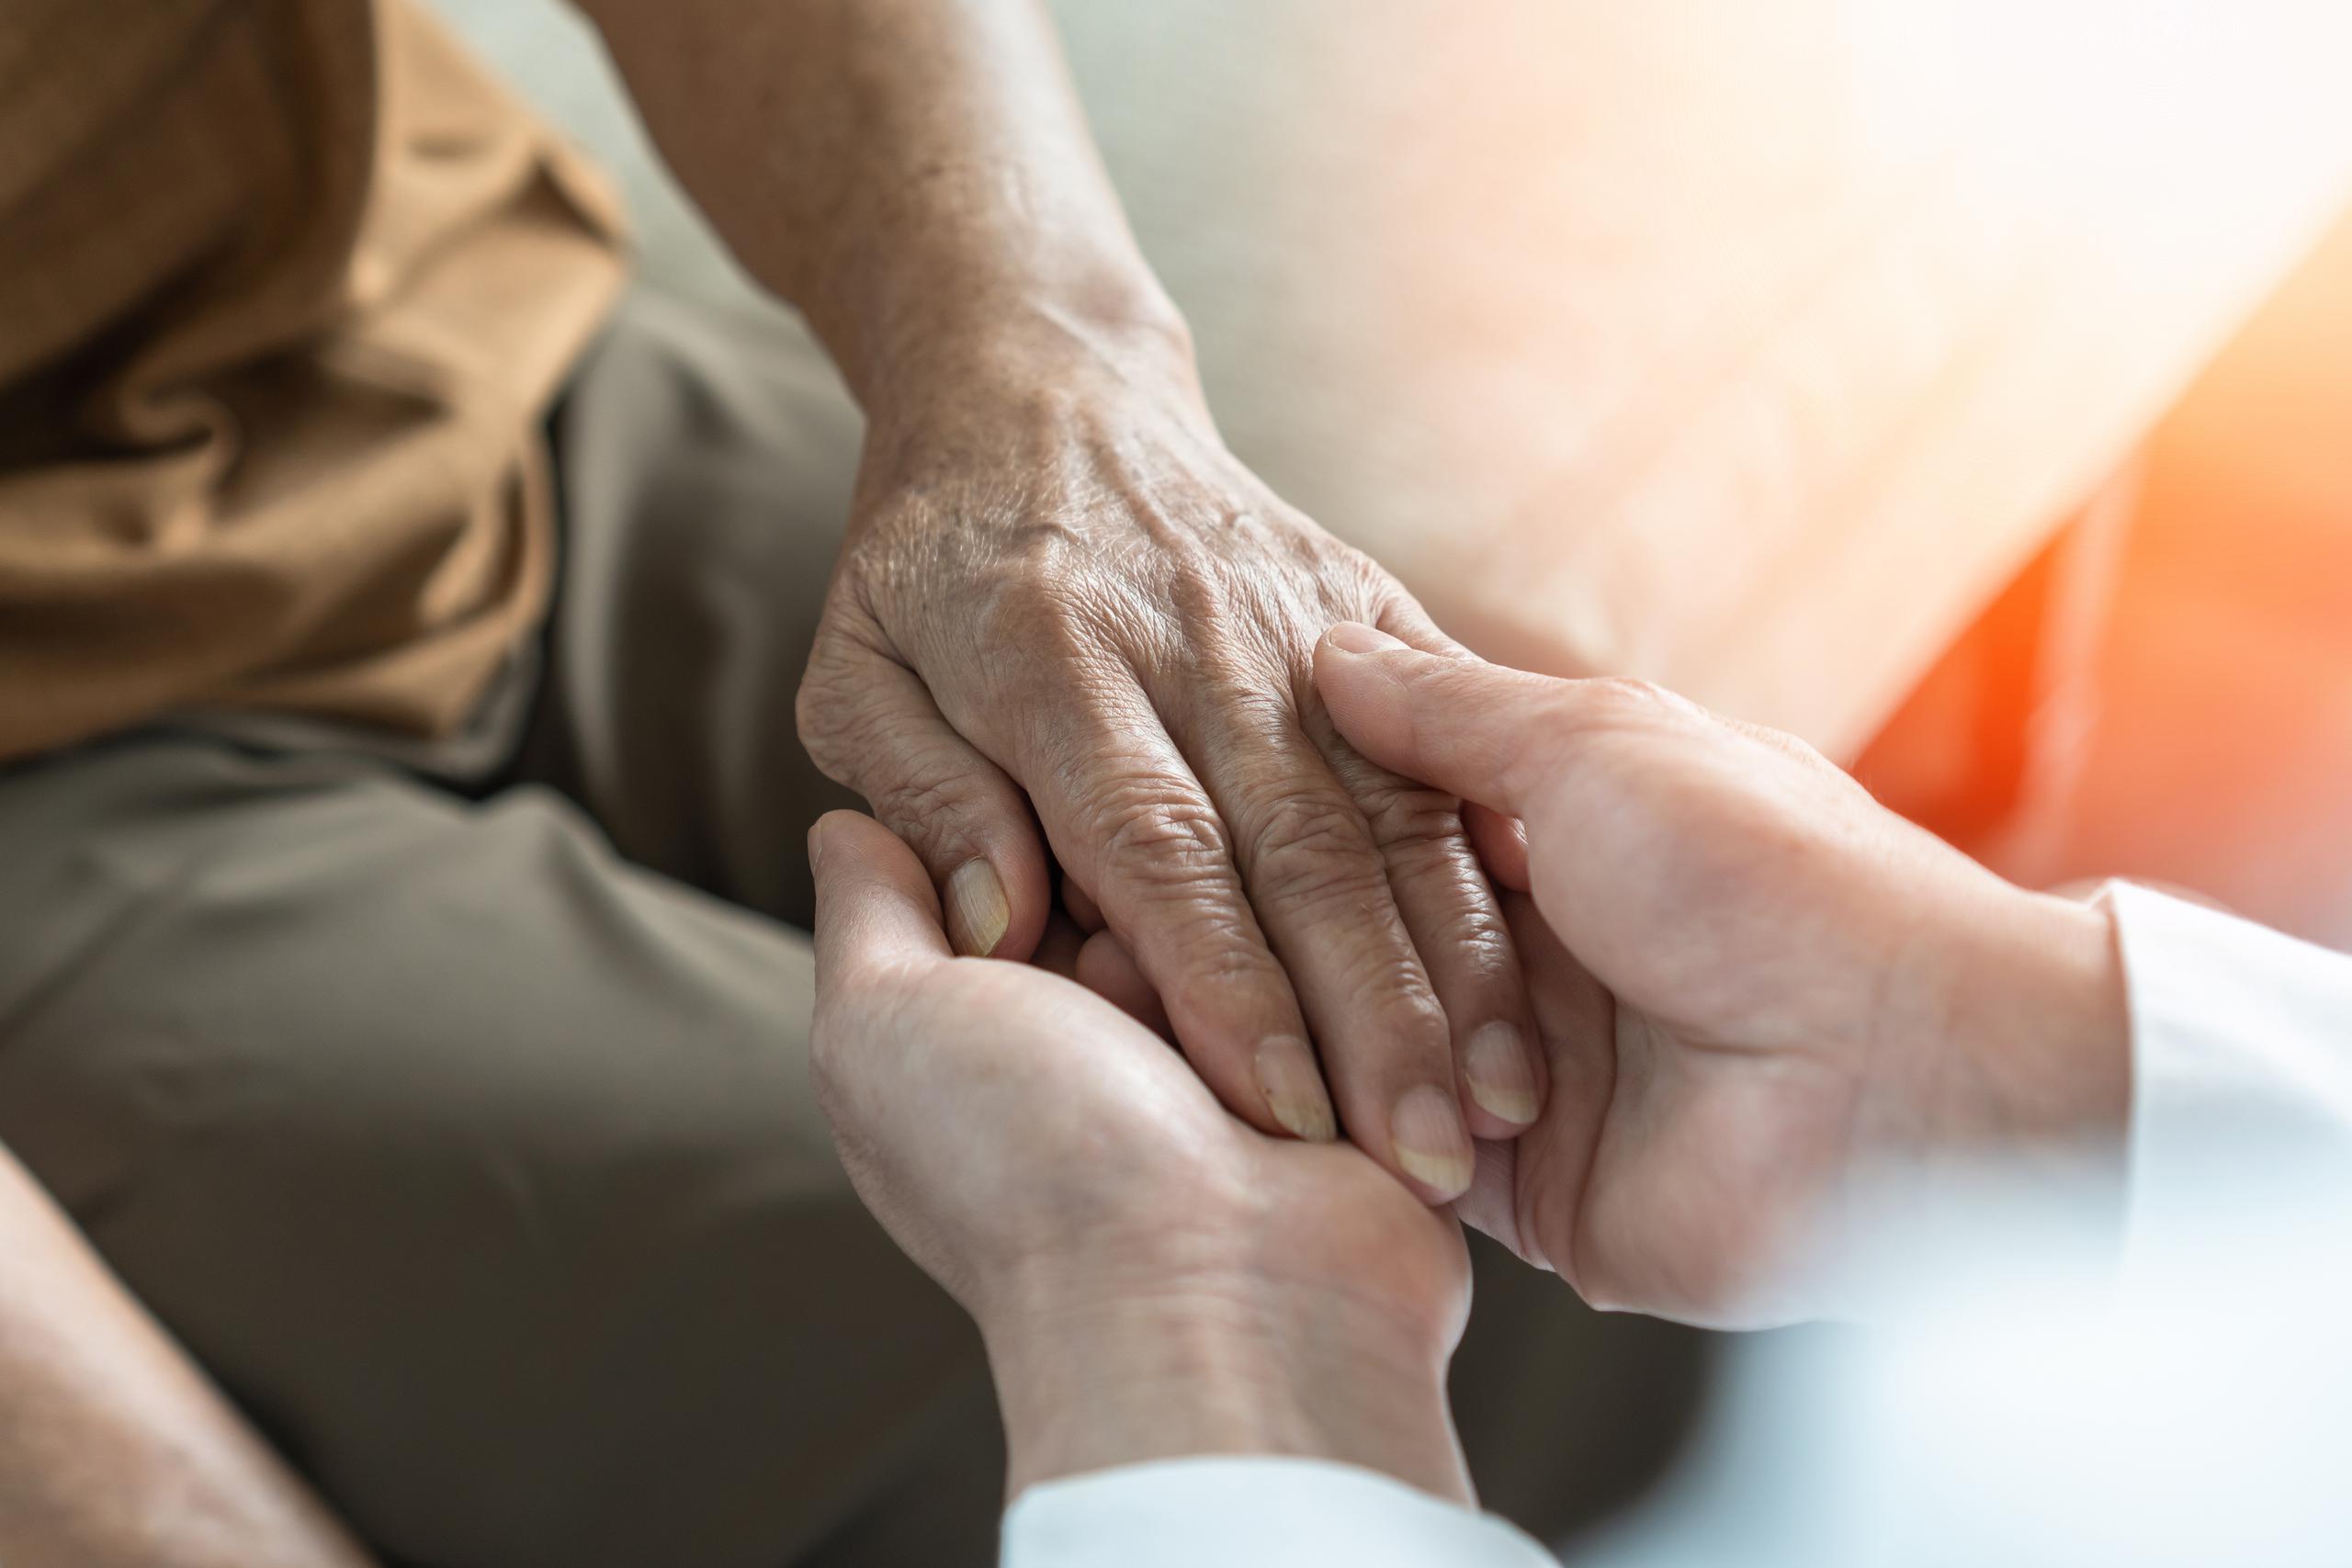 Esta plataforma provee a los cuidadores informales la posibilidad de obtener certificaciones y recertificaciones de elegibilidad a los programas relacionados al cuidado de adultos mayores.